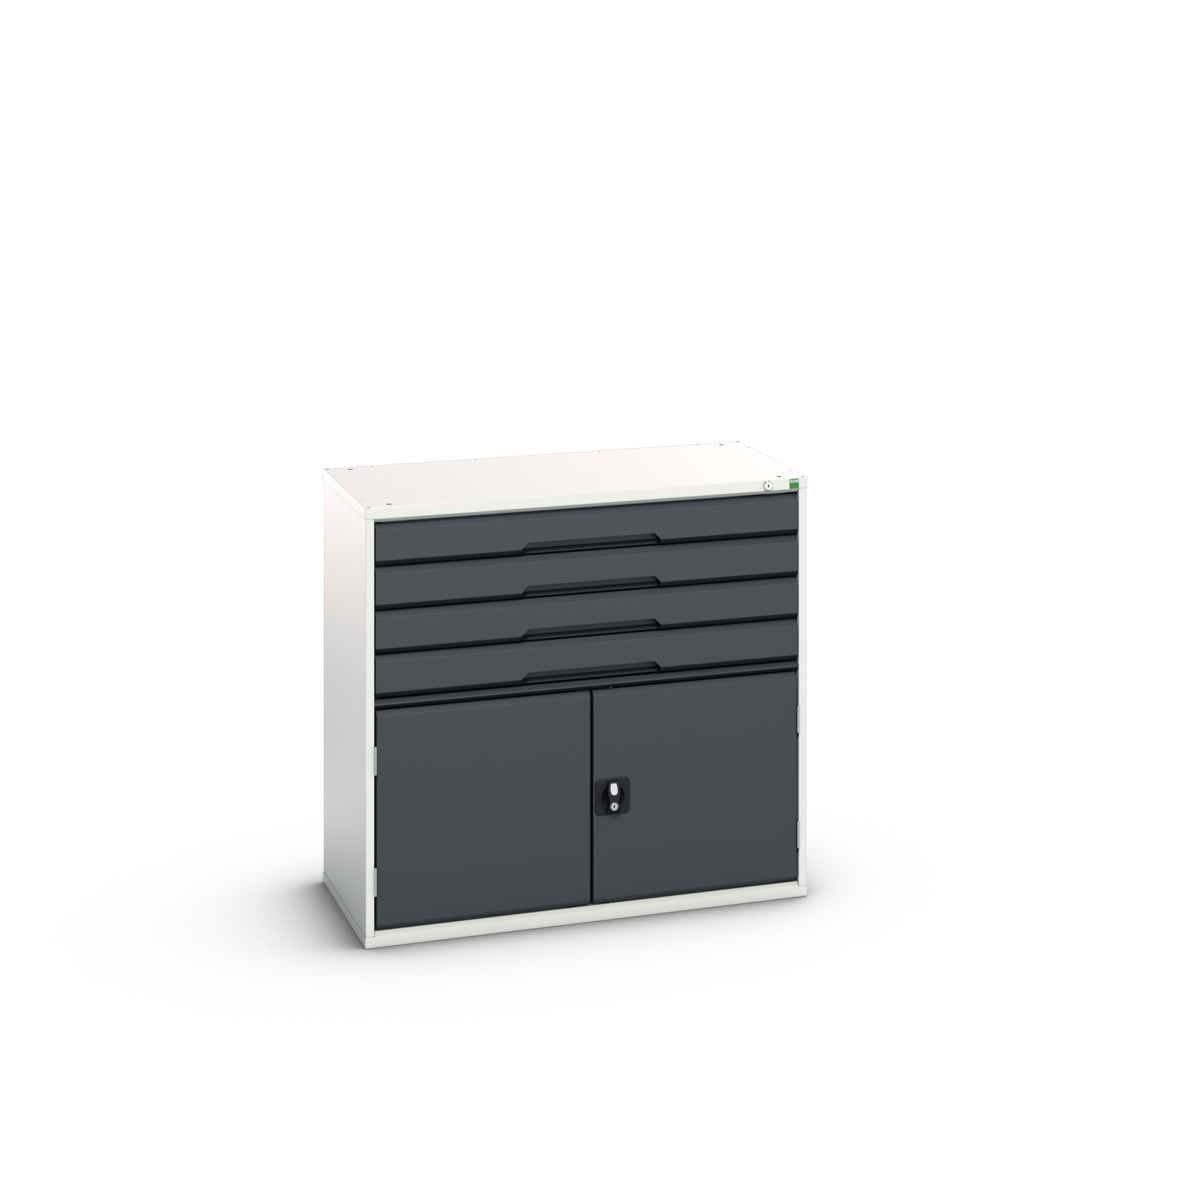 16925565.19 - verso drawer-door cabinet